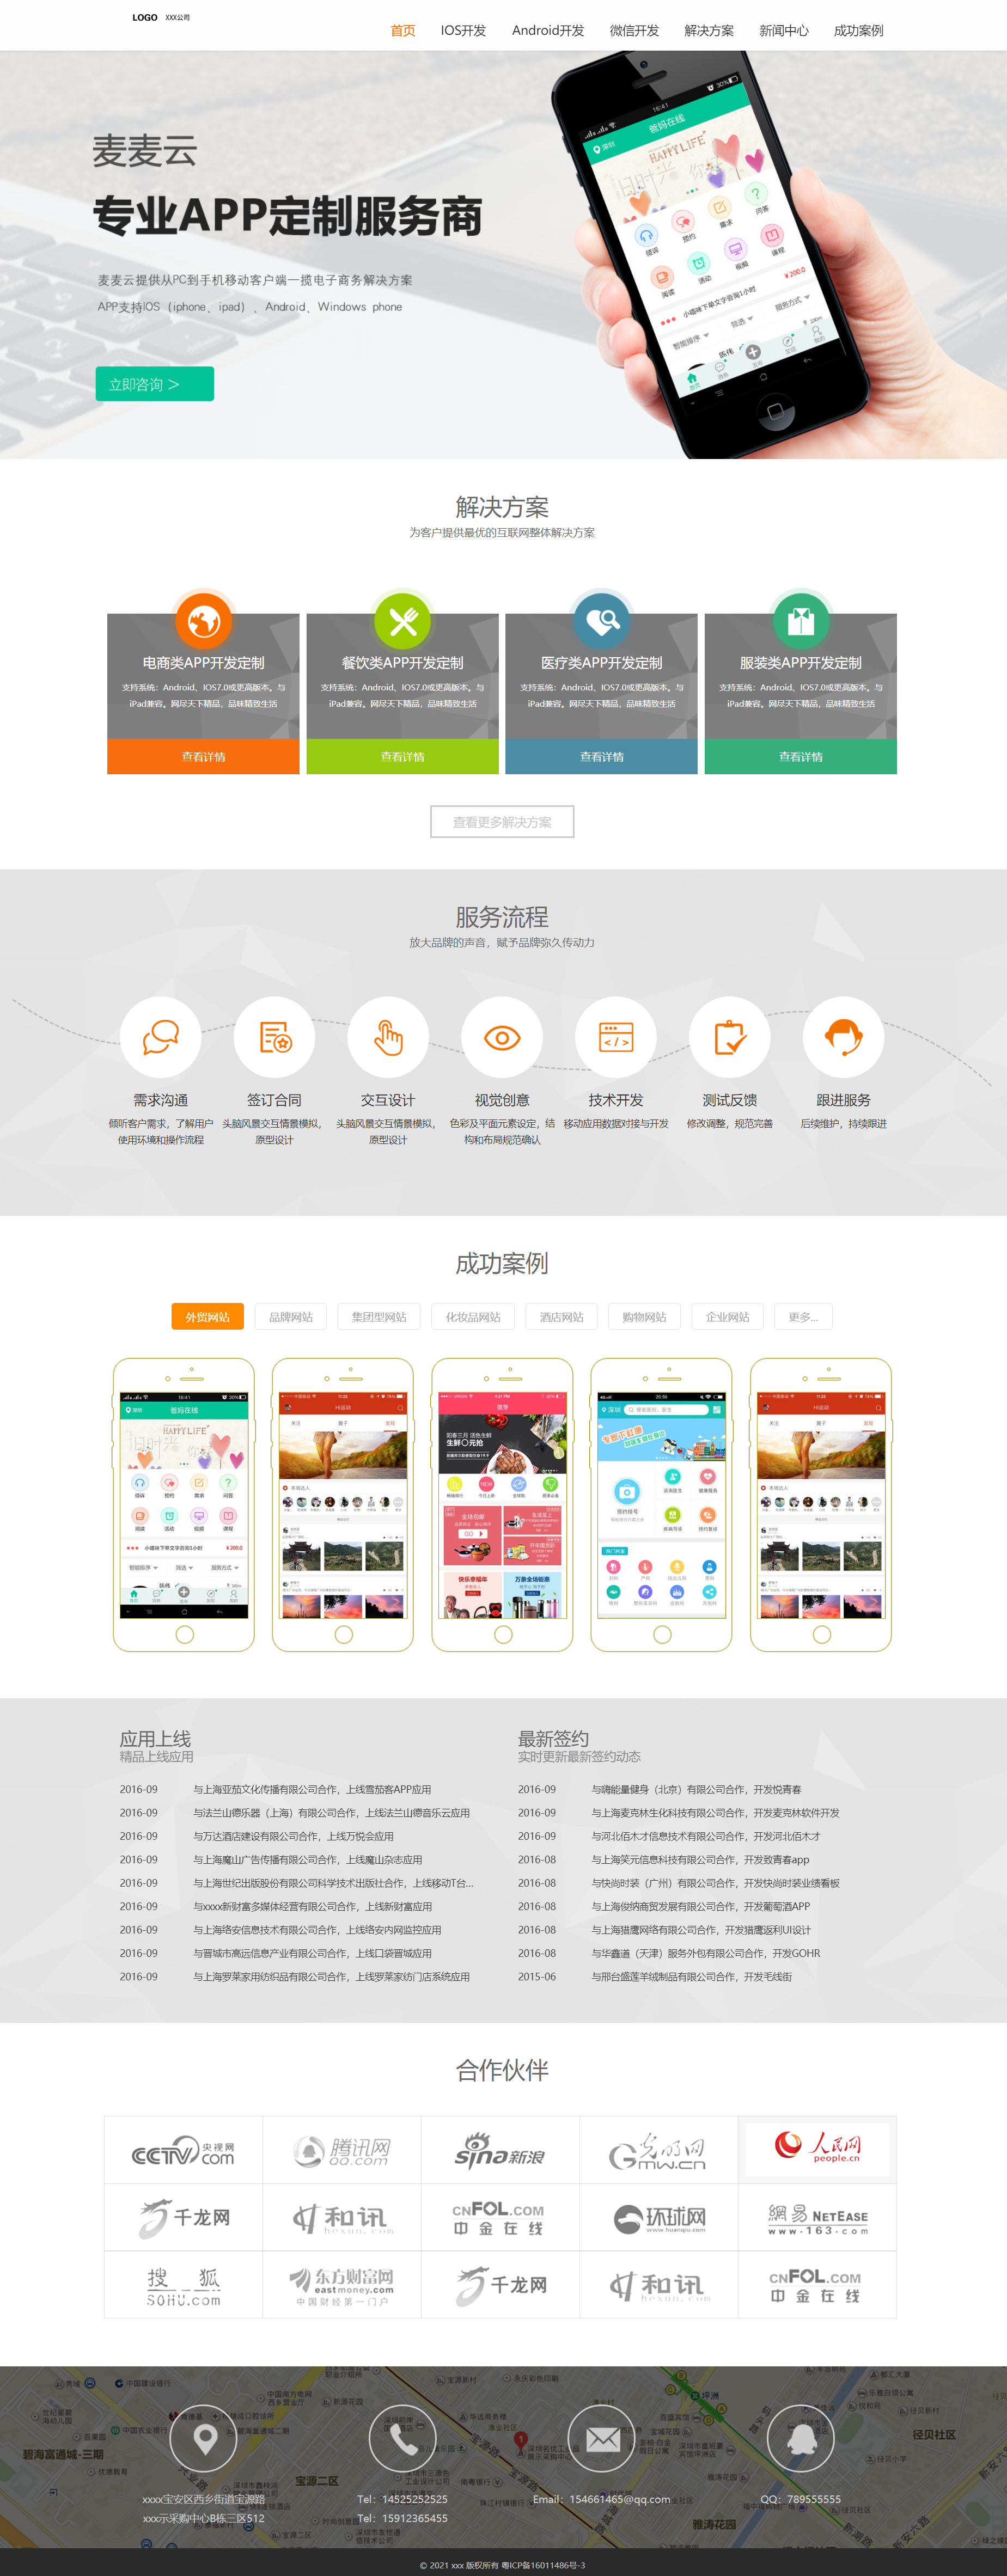 橙色简洁风格响应式手机app开发企业网站模板